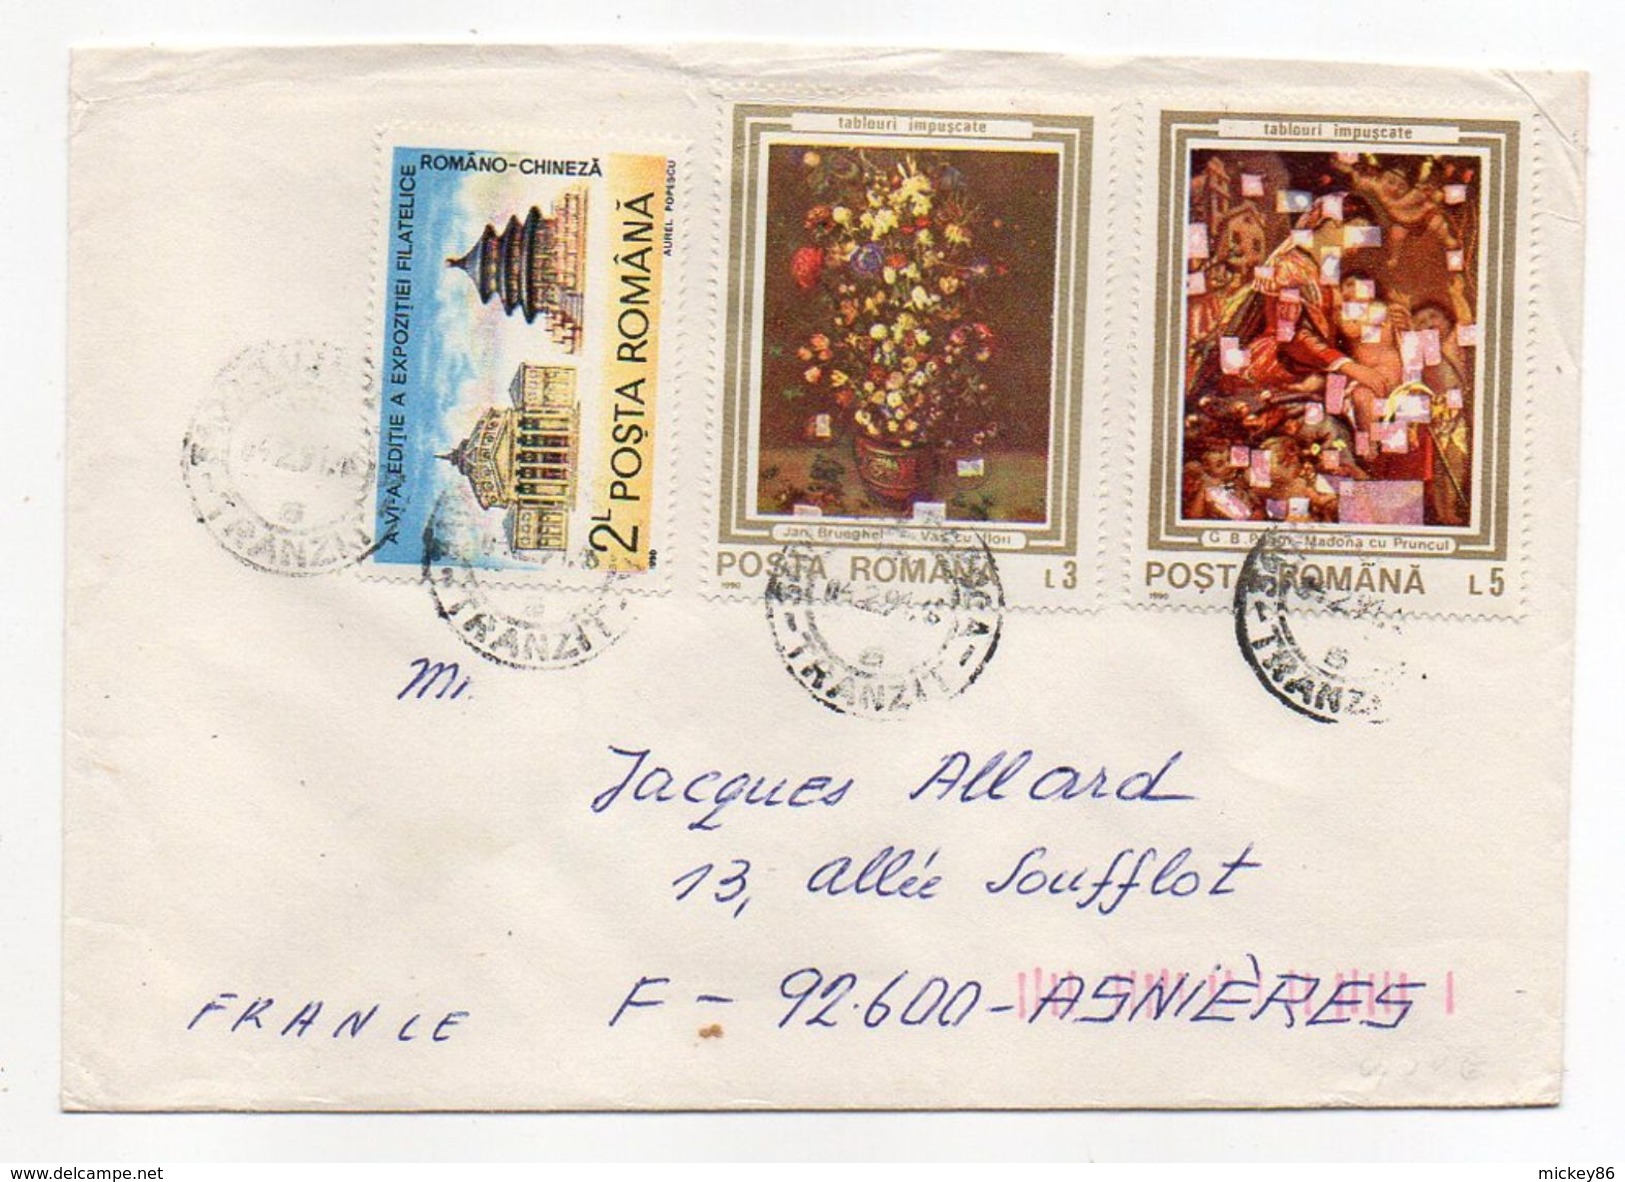 Roumanie-1990-Lettre De CLUJ-NAPOCA Pour ASNIERES-92(France) -beaux Timbres  -cachet CLUJ - Lettres & Documents